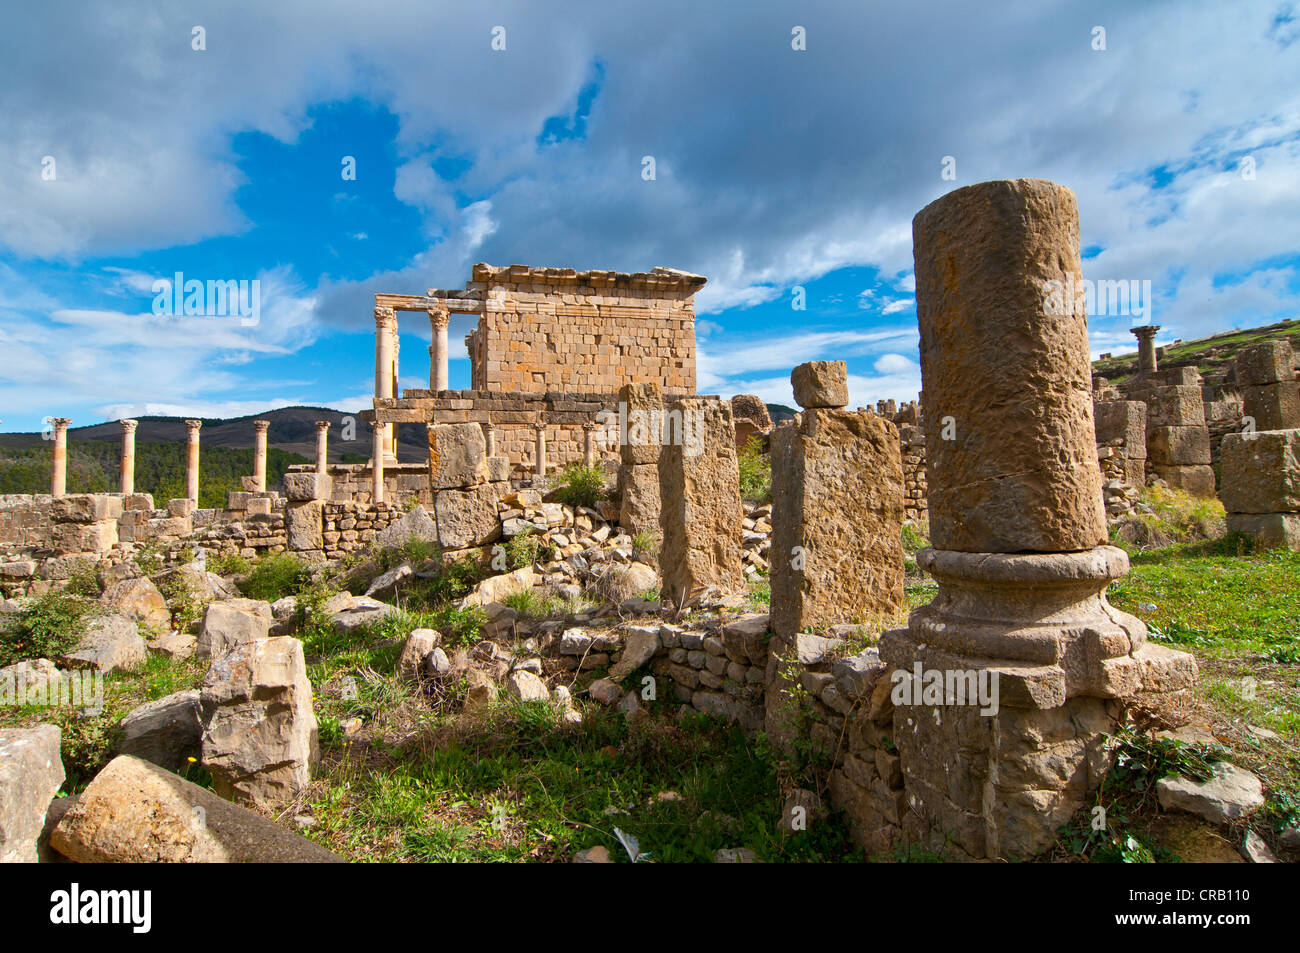 Temple de Septime Sévère, les ruines romaines de Djemila, UNESCO World Heritage Site, Kabylie, Algérie, Afrique Banque D'Images